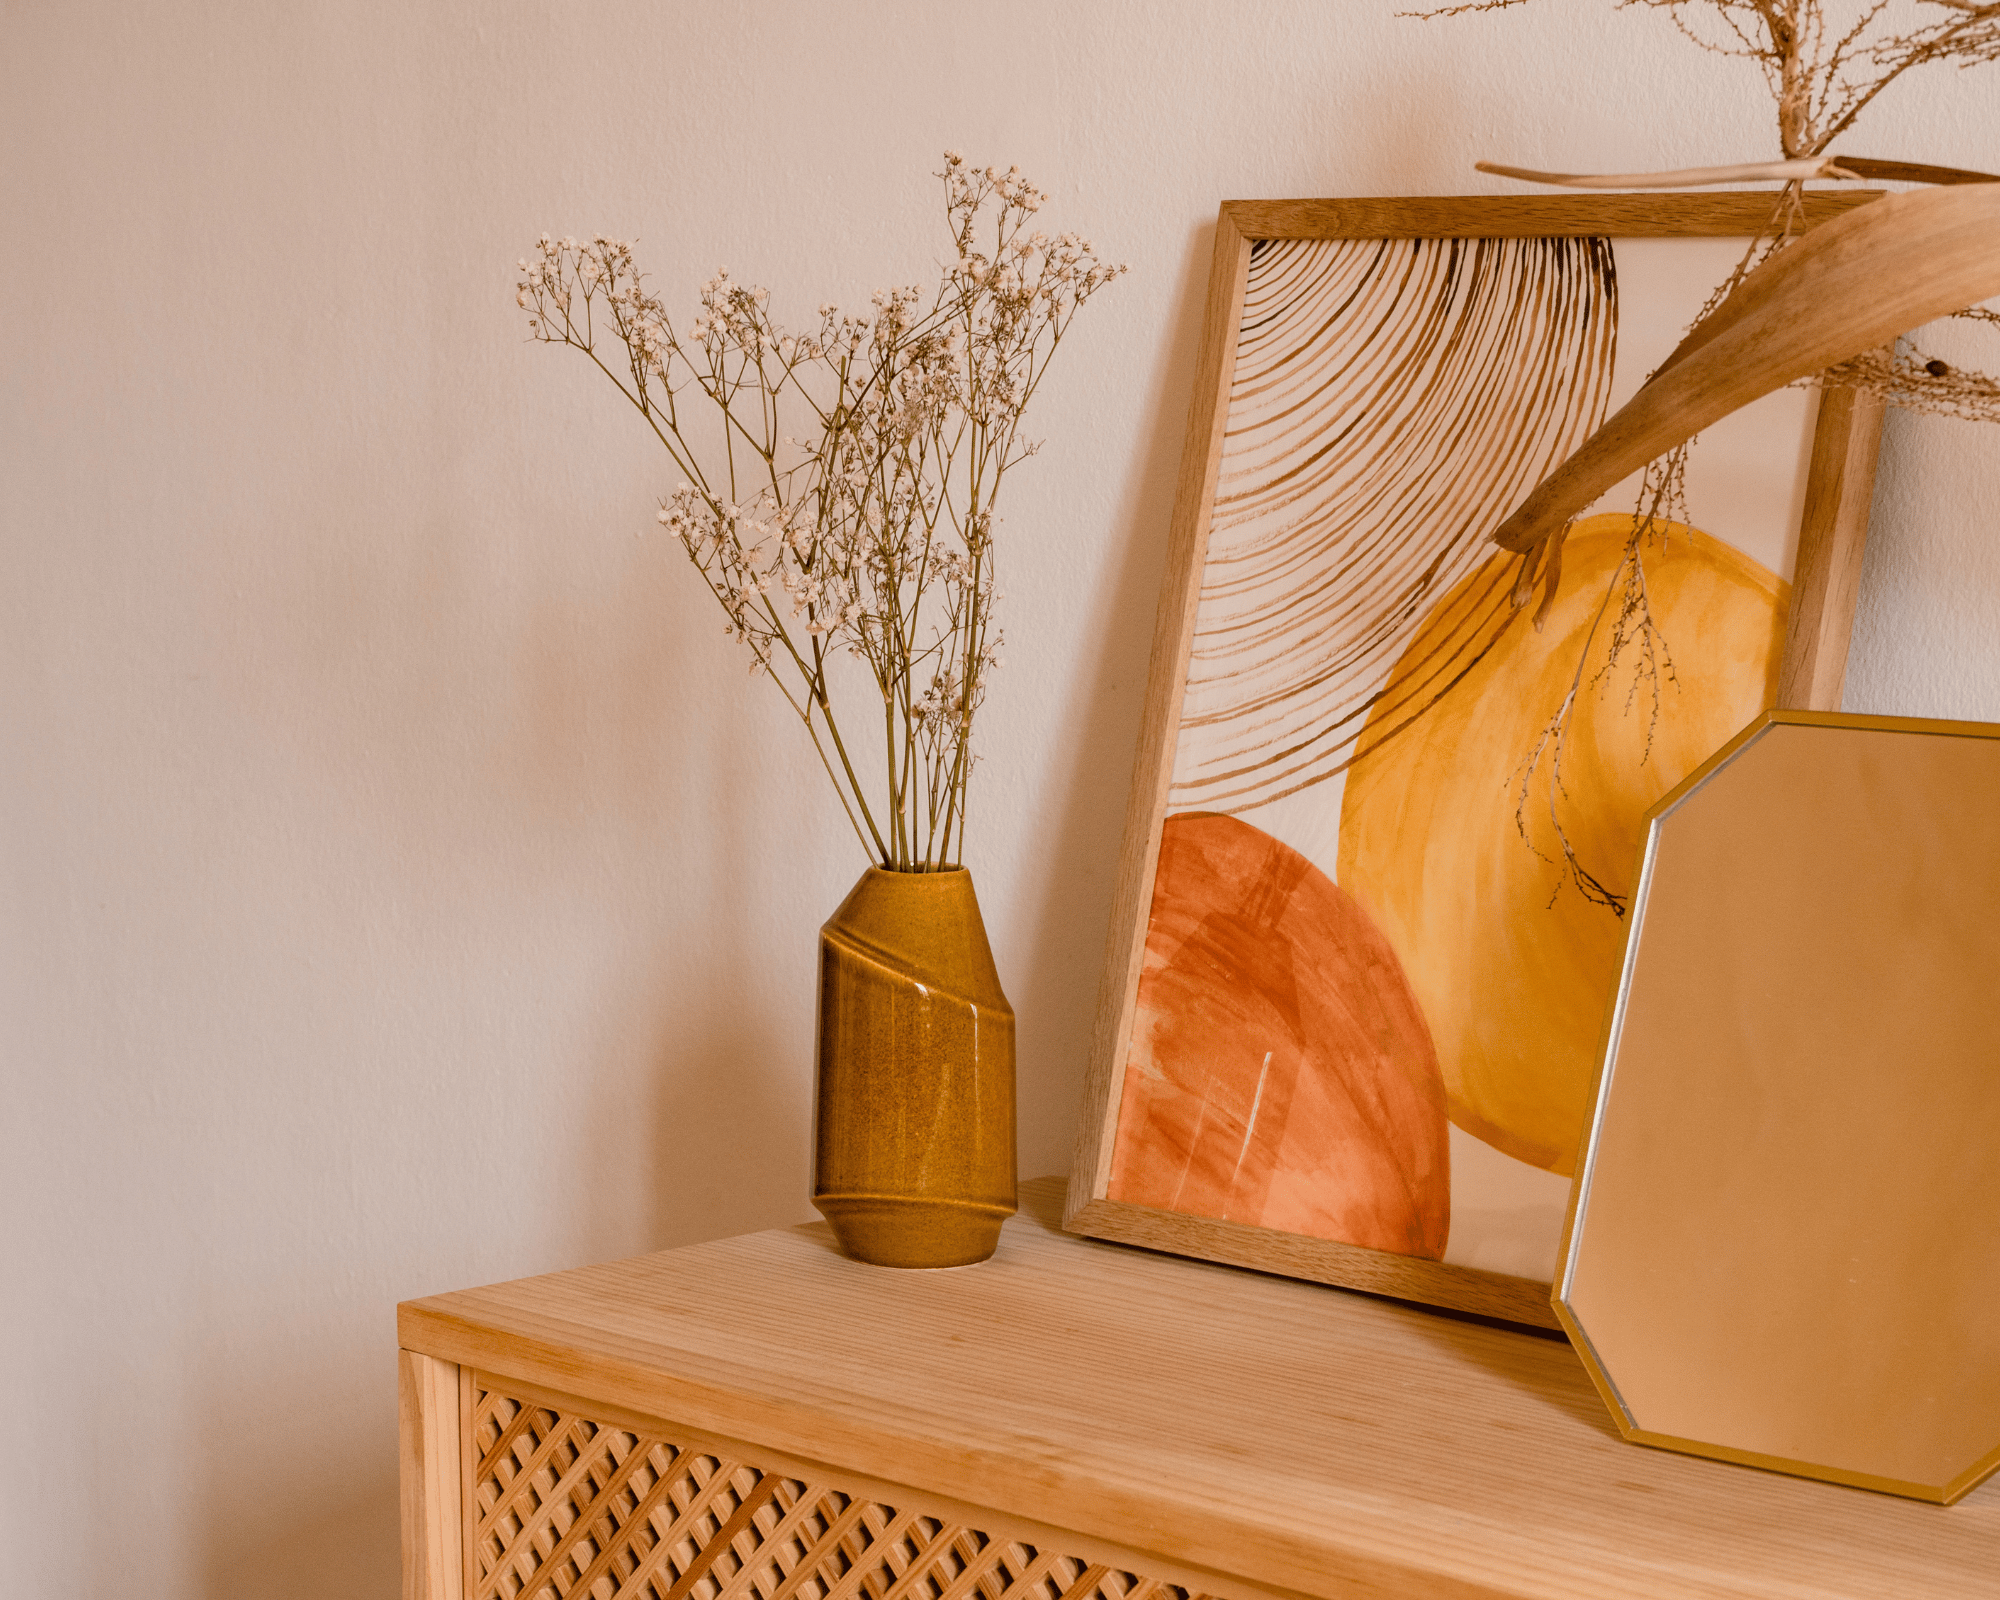 meuble en rotin sur lequel se trouve u vase en rose avec desplantes dedans , un cadre avec un tableau coloré par des formes arrondies et un cadre orange